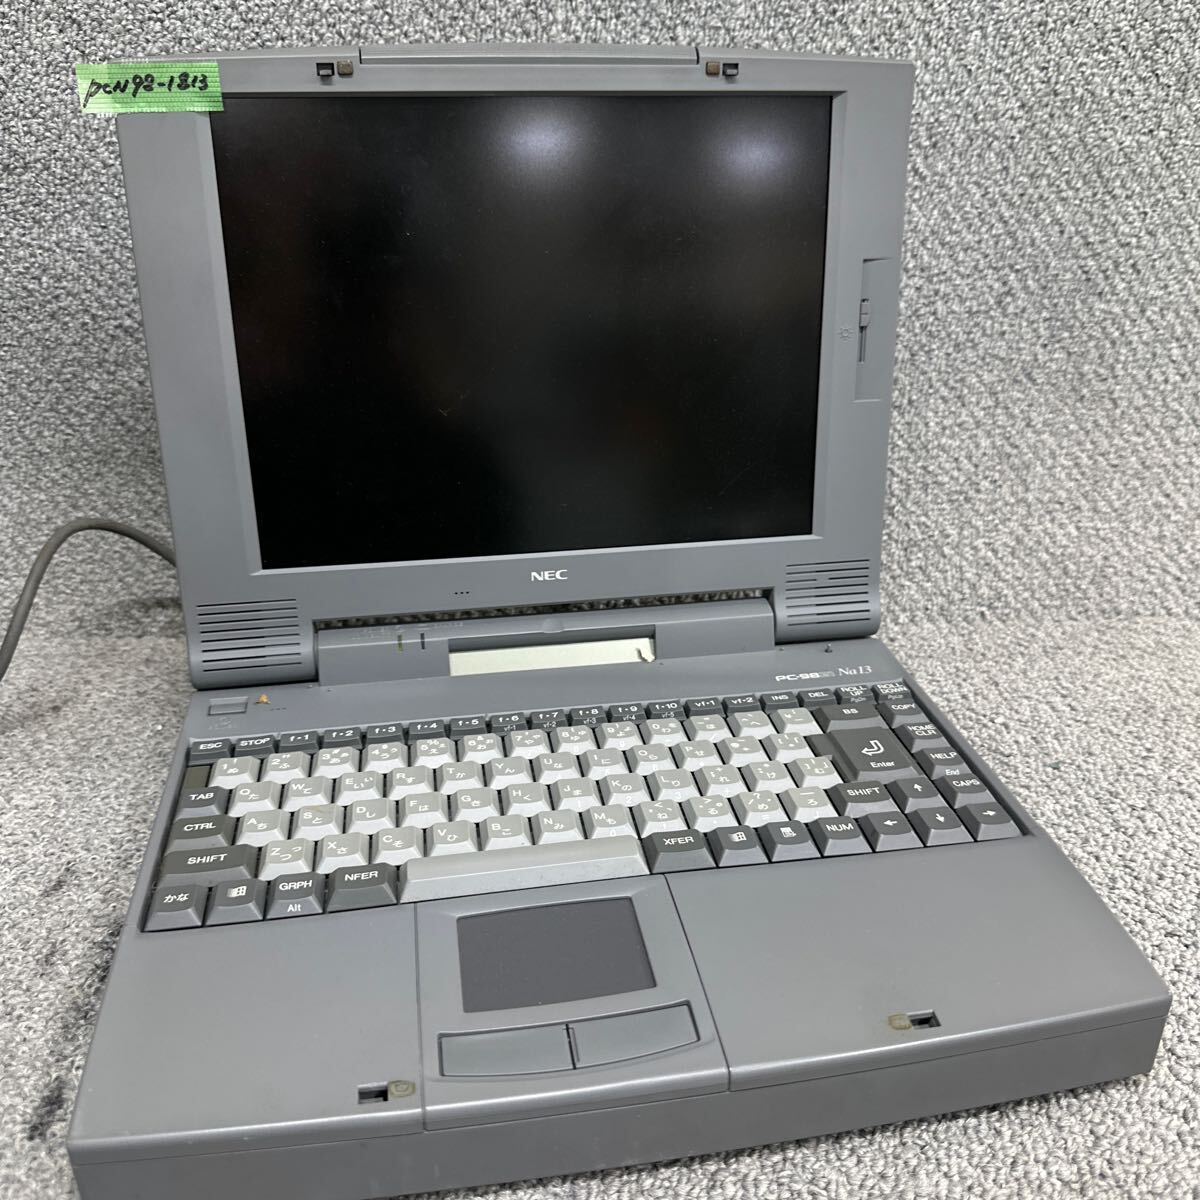 PCN98-1813 супер-скидка PC98 ноутбук NEC 98note Lavie PC-9821Na13/H10 пуск лампа подтверждено Junk включение в покупку возможность 